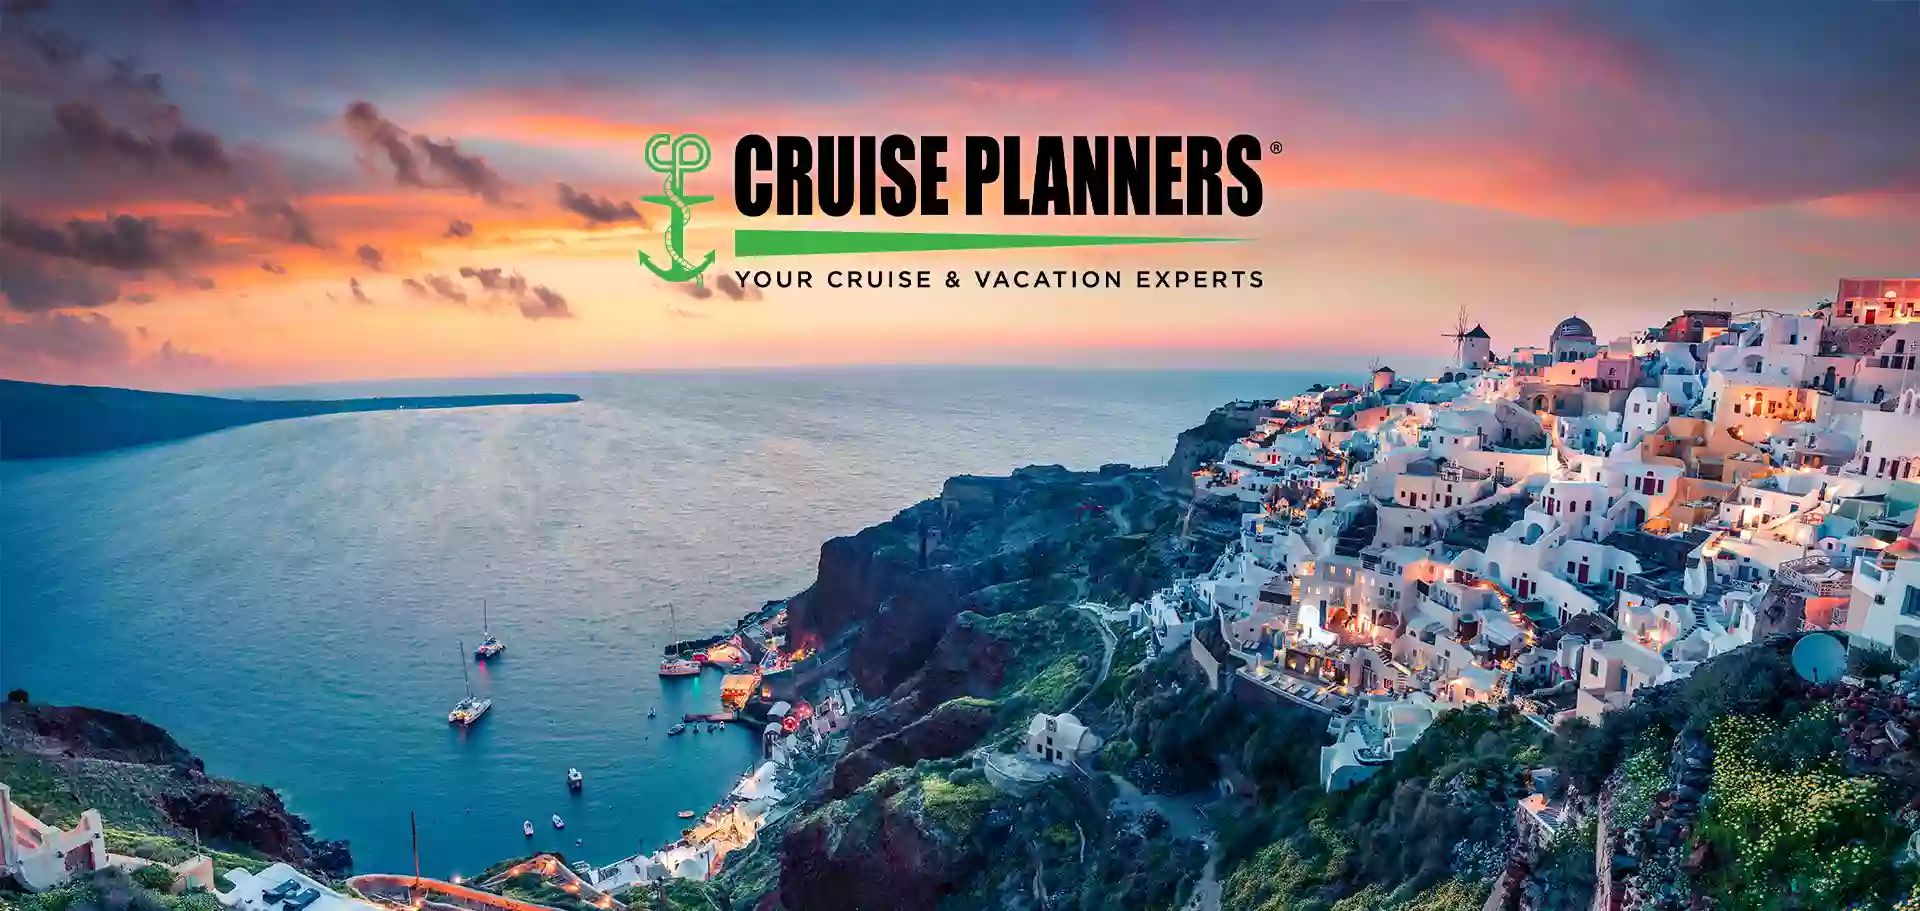 Cruise Planners - Derek Chandler